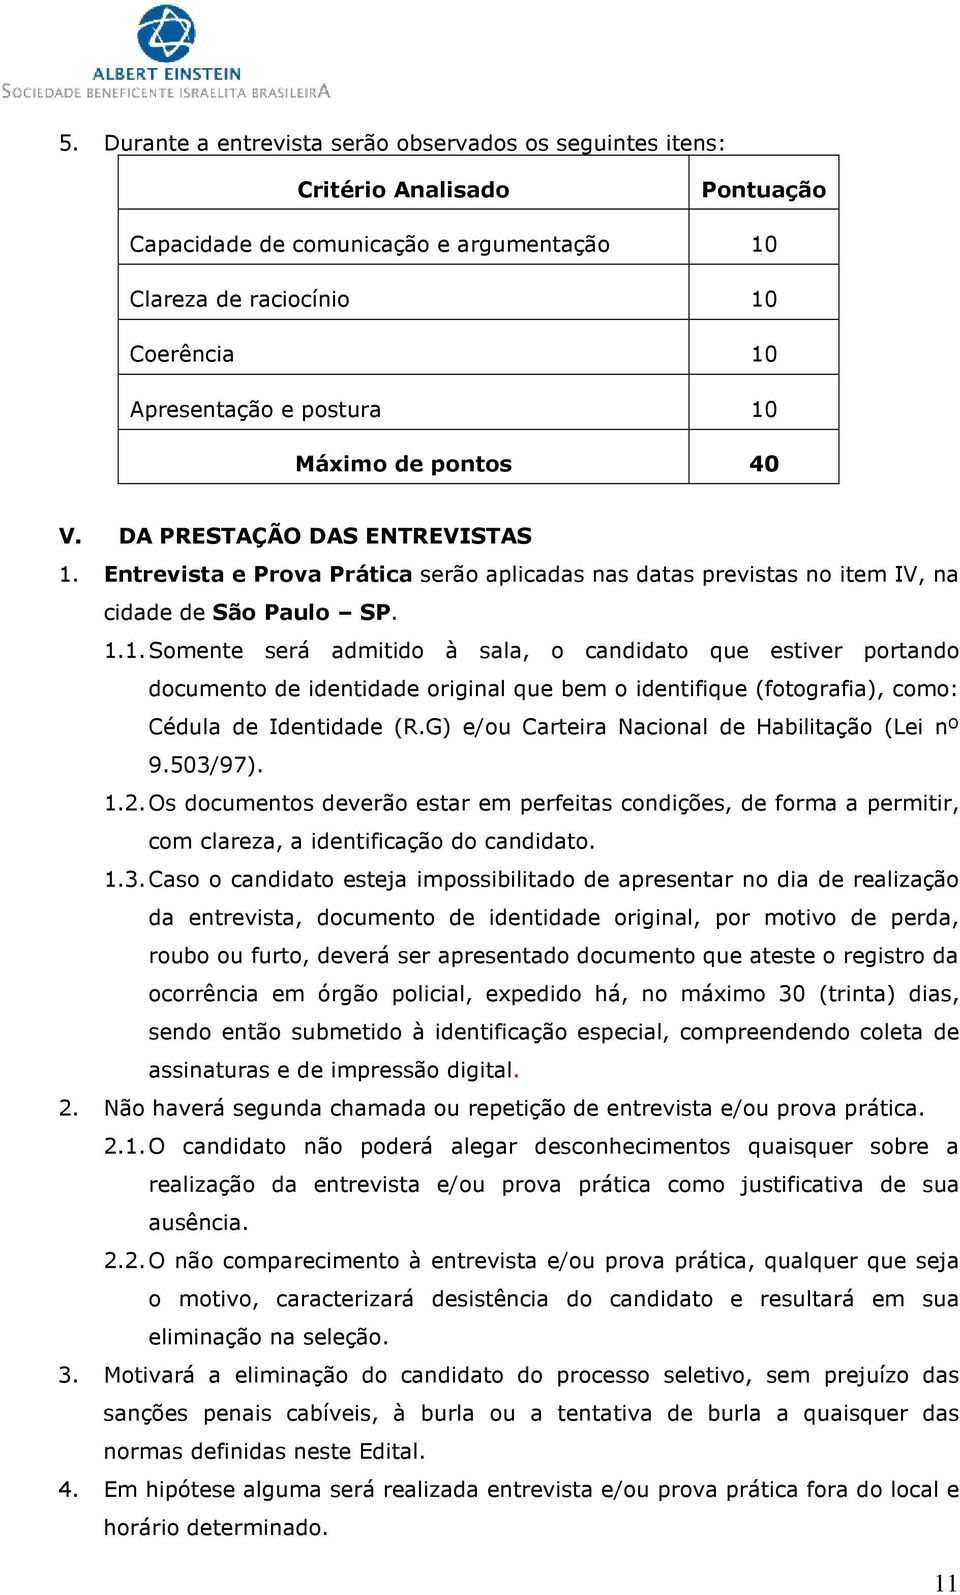 Entrevista e Prova Prática serão aplicadas nas datas previstas no item IV, na cidade de São Paulo SP. 1.